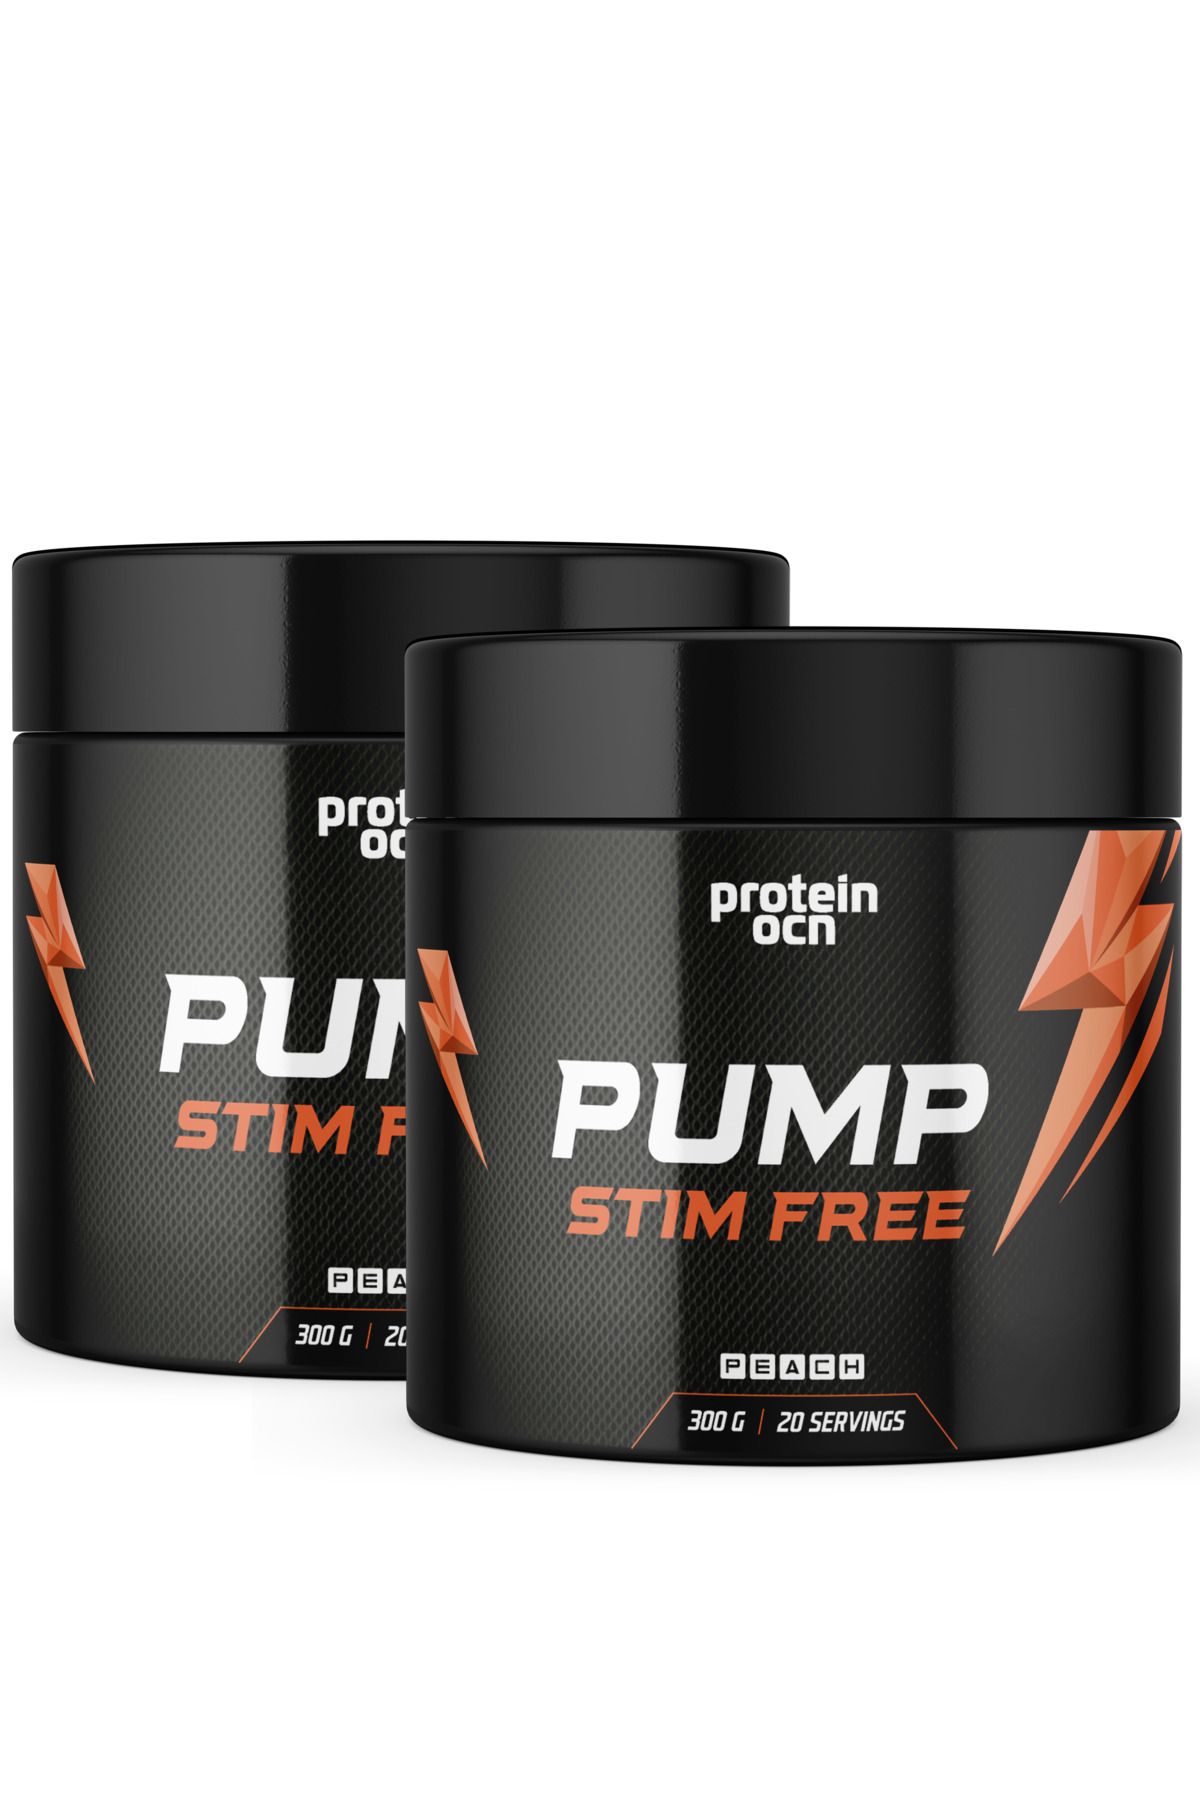 Proteinocean Pump Stım Free Şeftali - 300g X 2 Adet